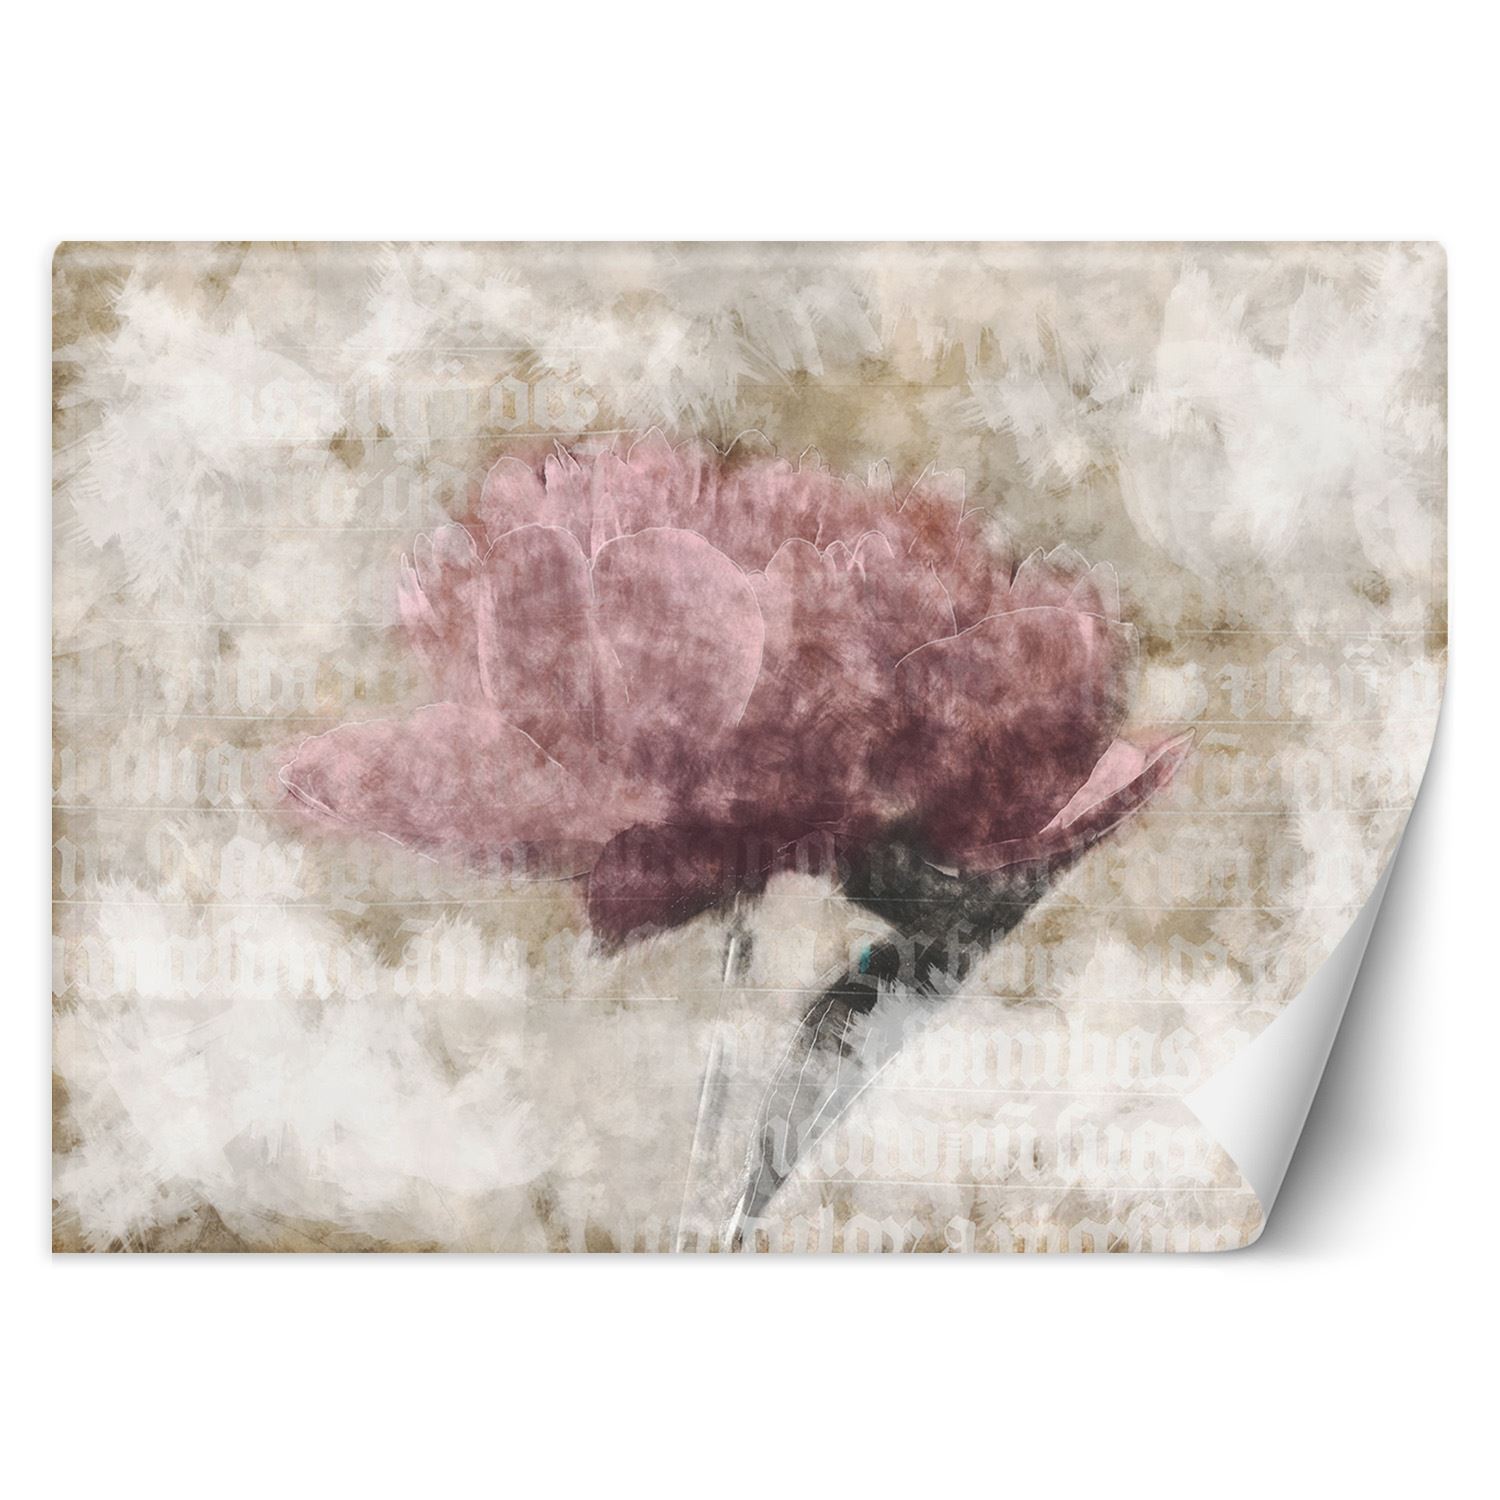 Trend24 – Behang – Abstracte Bloemen In Pastelkleuren – Vliesbehang – Fotobehang 3D – Behang Woonkamer – 350x245x2 cm – Incl. behanglijm